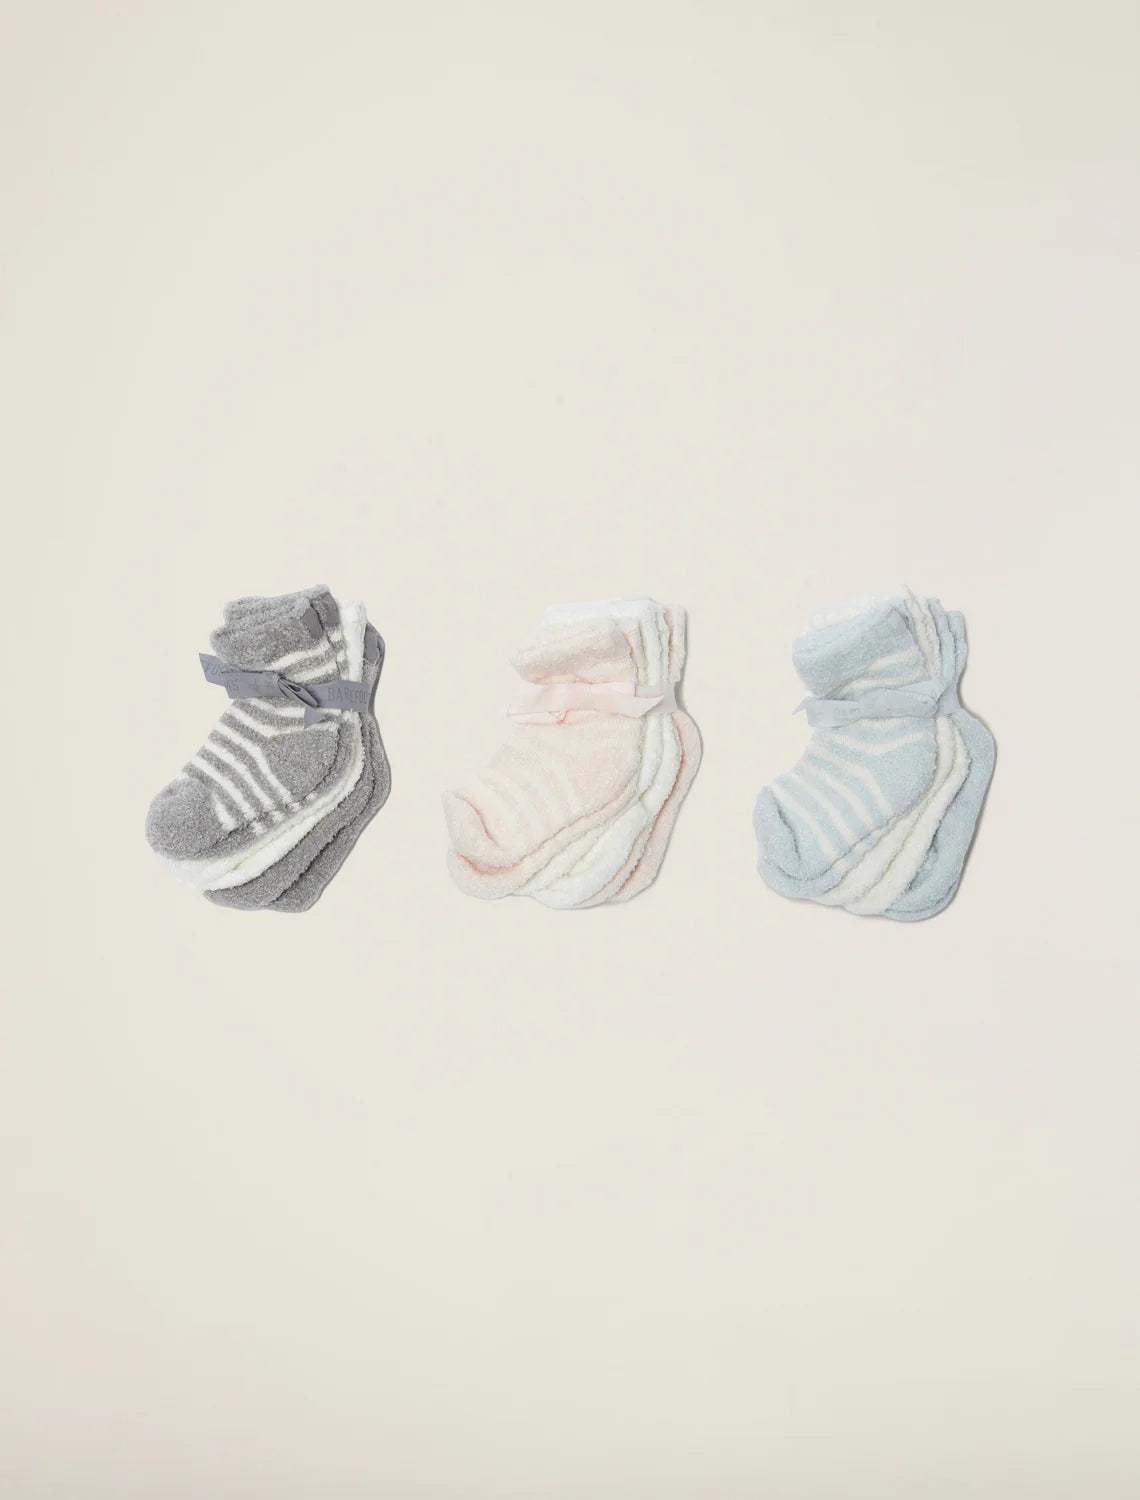 CozyChic 3 Pair Infant Sock Set | Blue